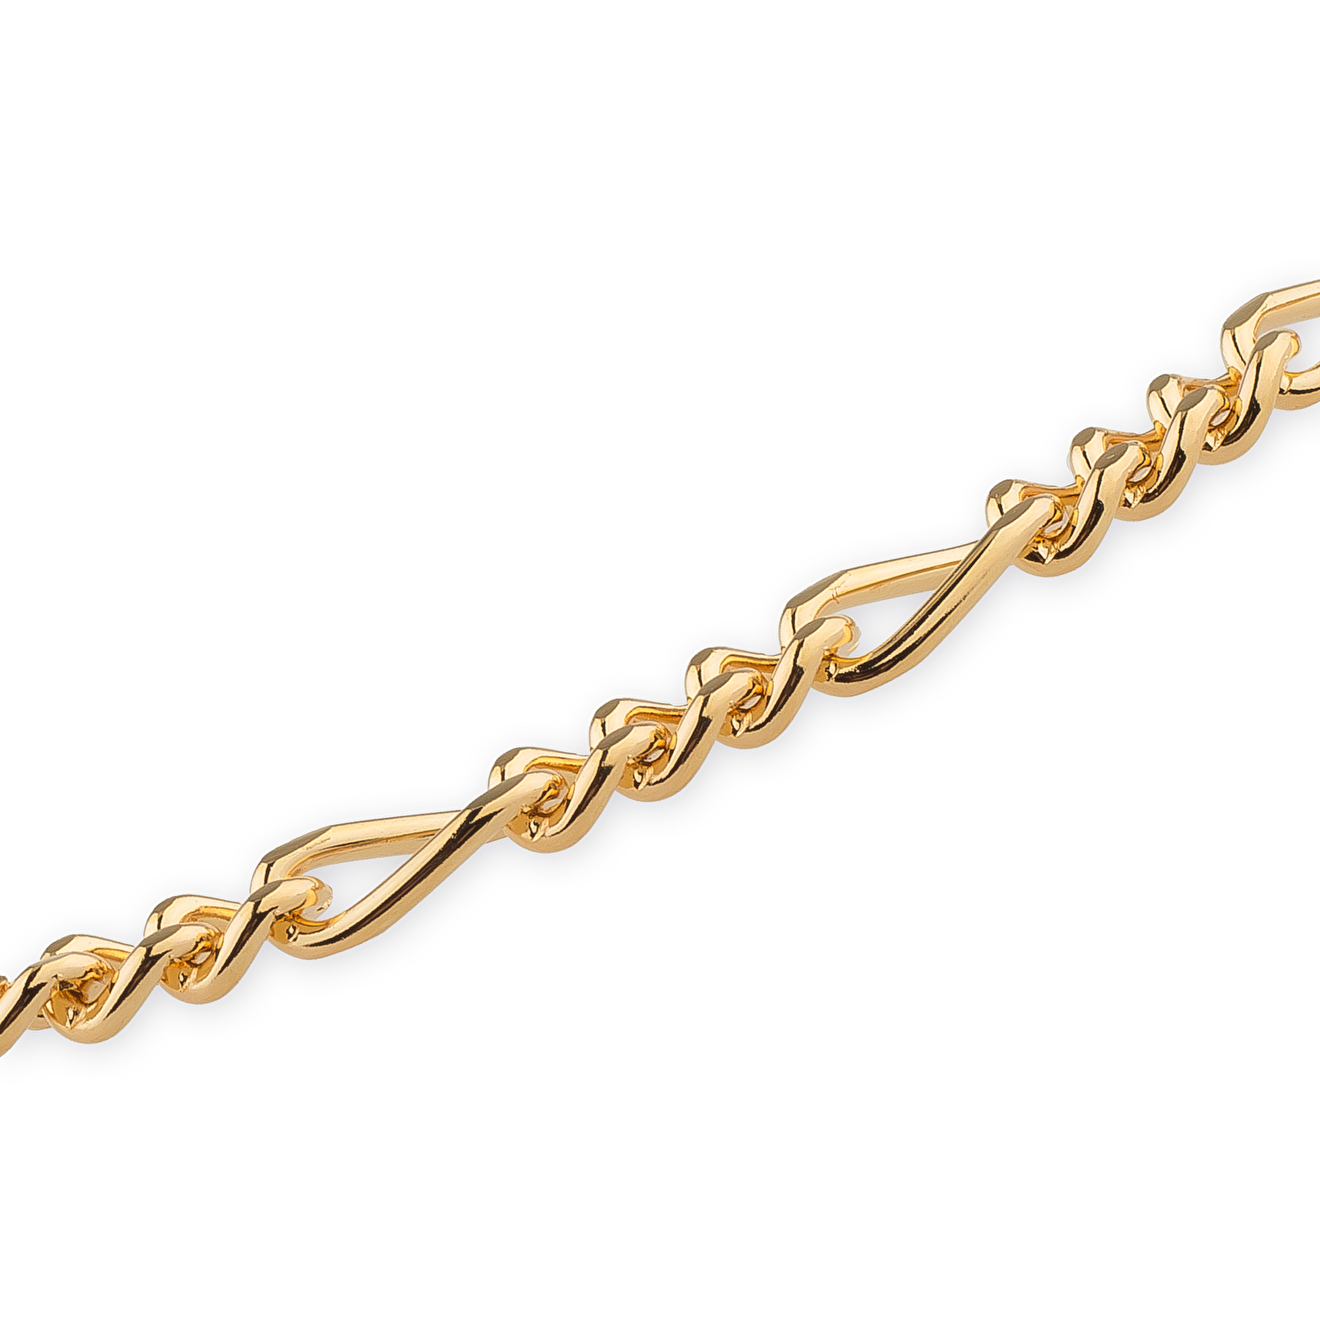 Aqua Золотистое колье-цепь с перекрученными звеньями lisa smith двойное золотистое колье с прямоугольными звеньями